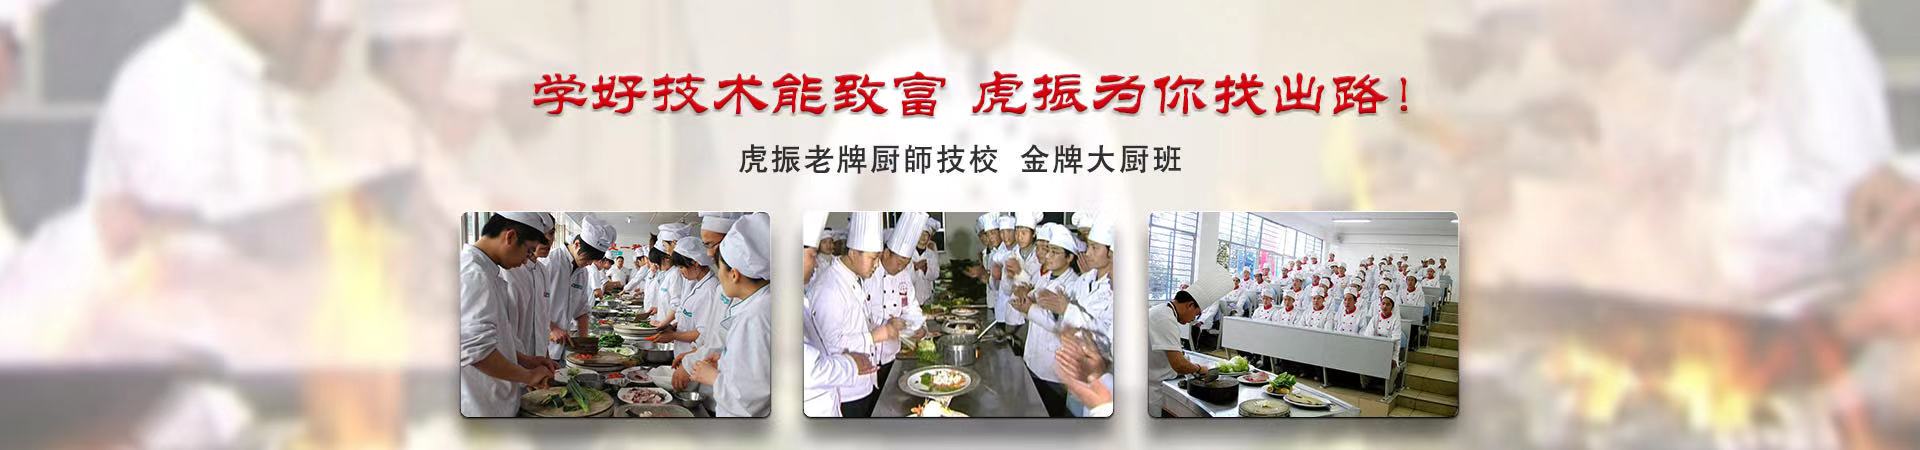 厨师培训、芜湖本地厨师培训、芜湖、芜湖厨师培训